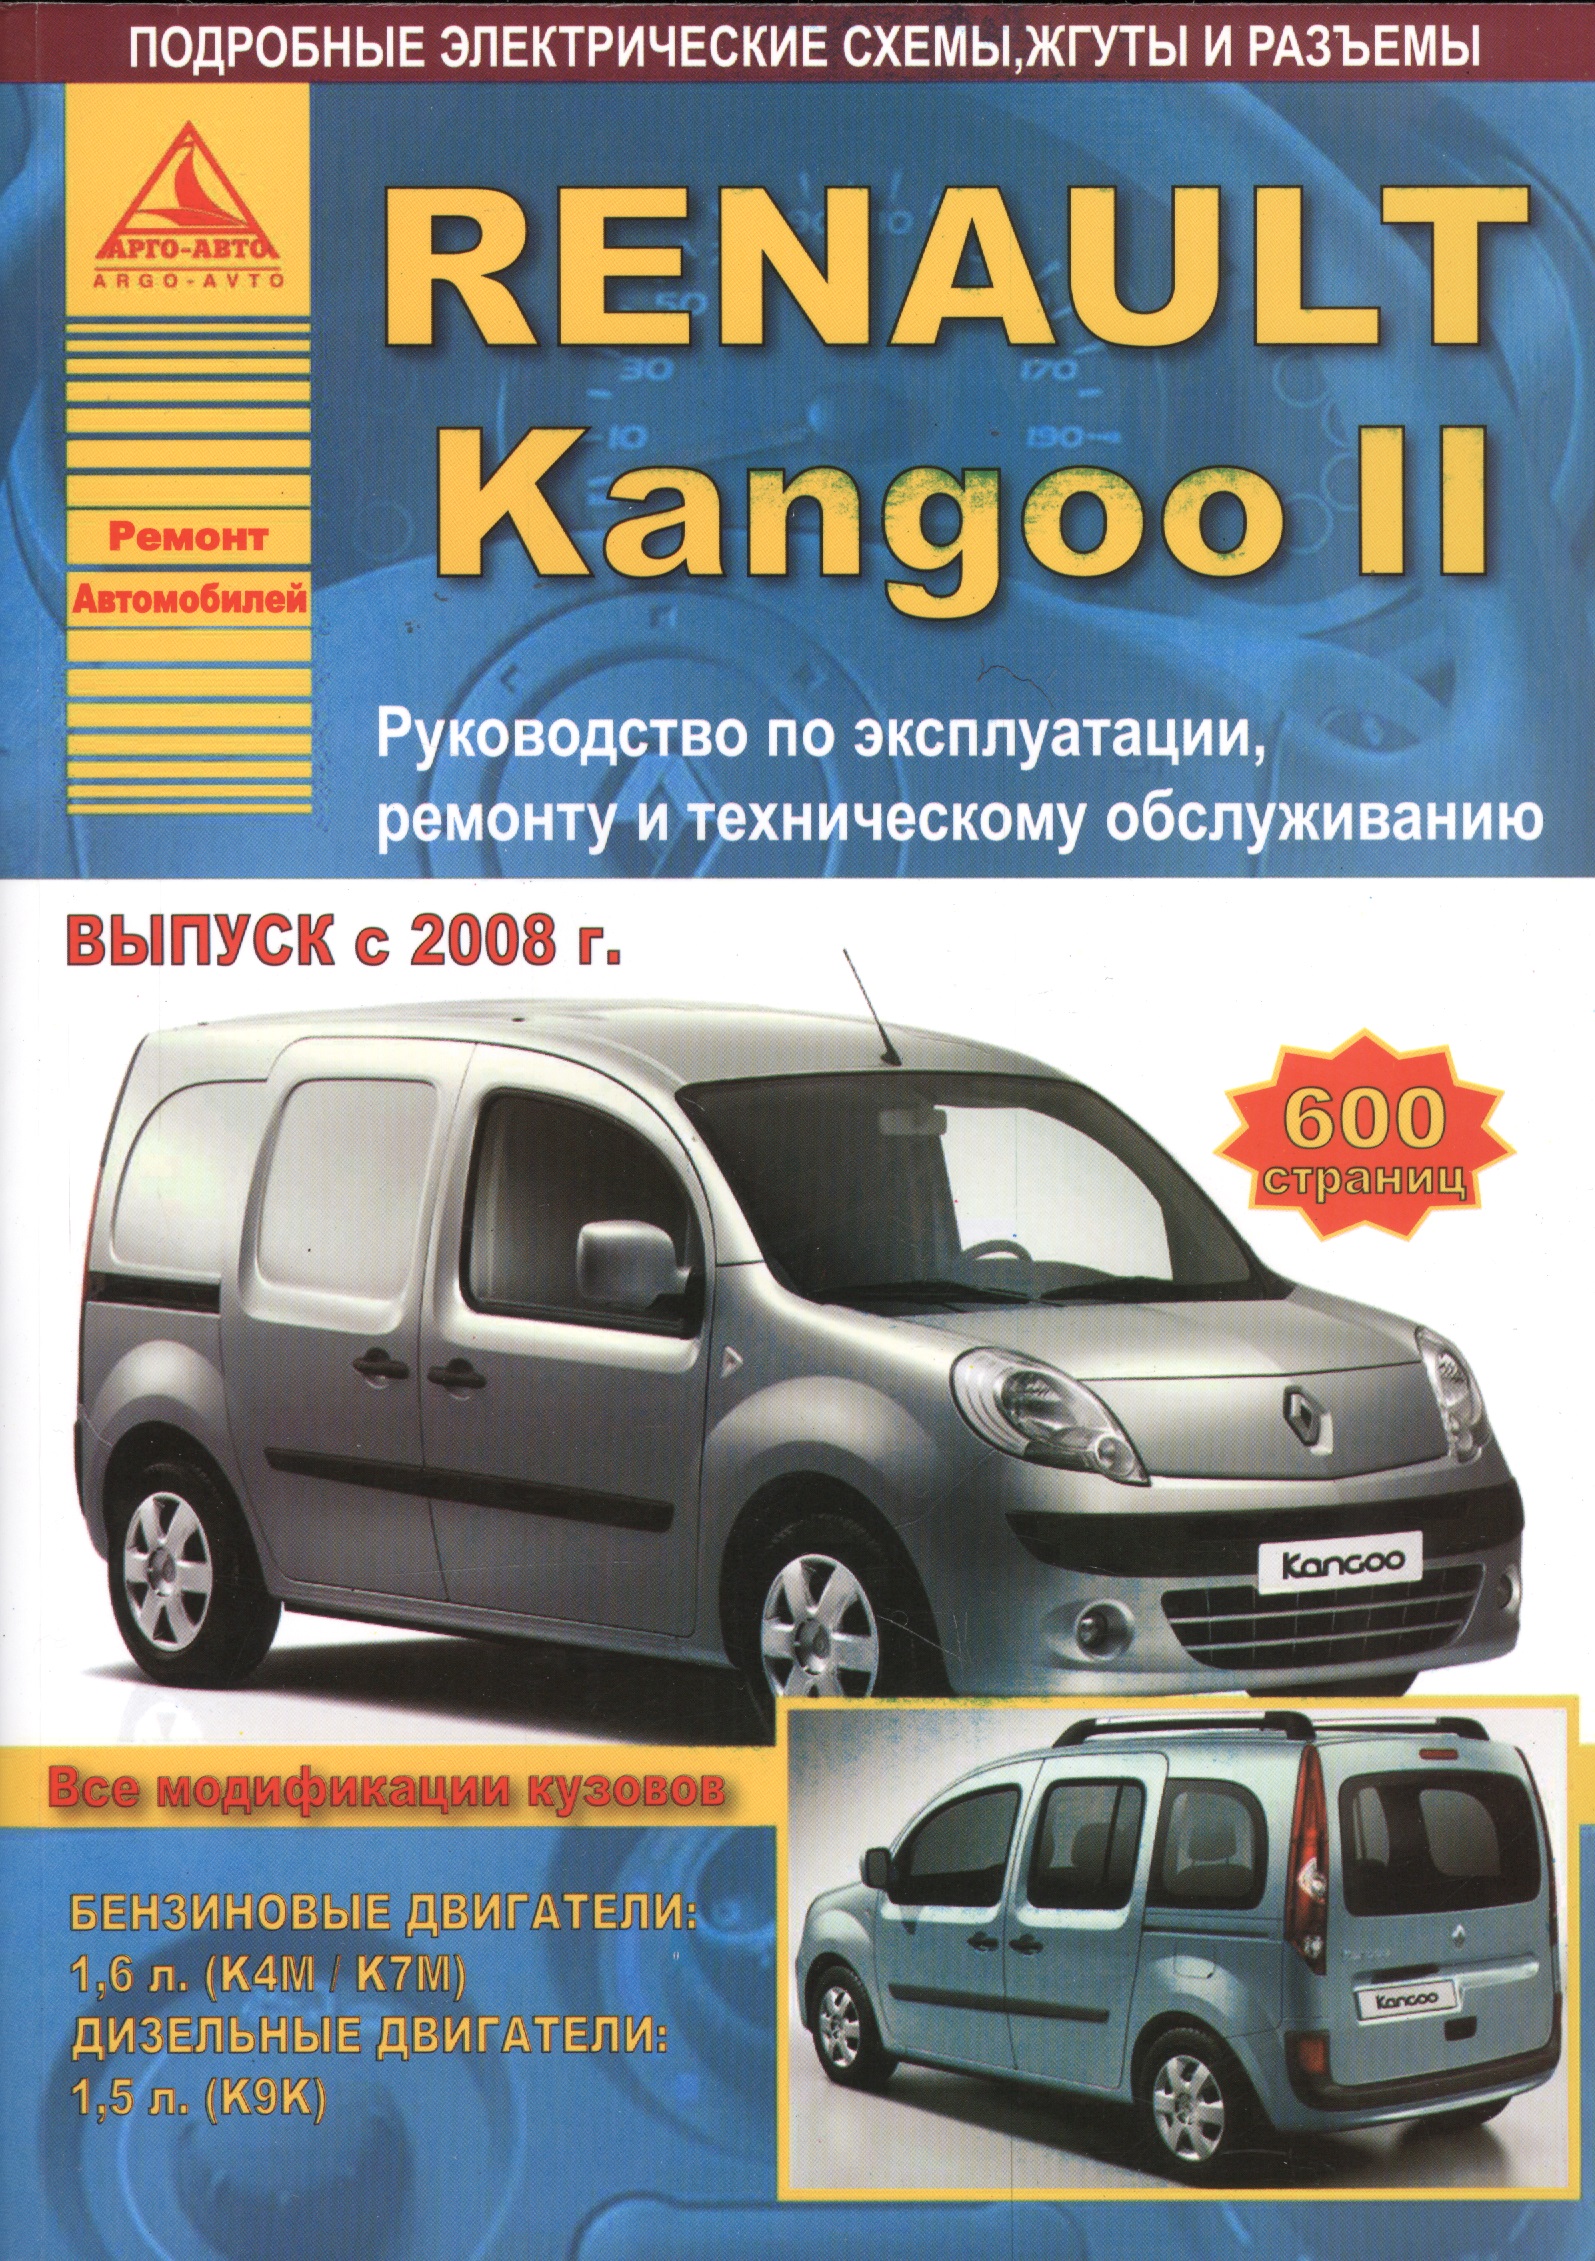 Renault Kangoo II. Руководство по эксплуатации, ремонту и техническому обслуживанию. Выпуск с 2008 г. Бензиновые двигатели: 1,6 л. (К4М/К7М). Дизельные двигатели: 1,5 л. (К9К) renoult clio ii kangoo fuel pipe set 7700115859 7700113176